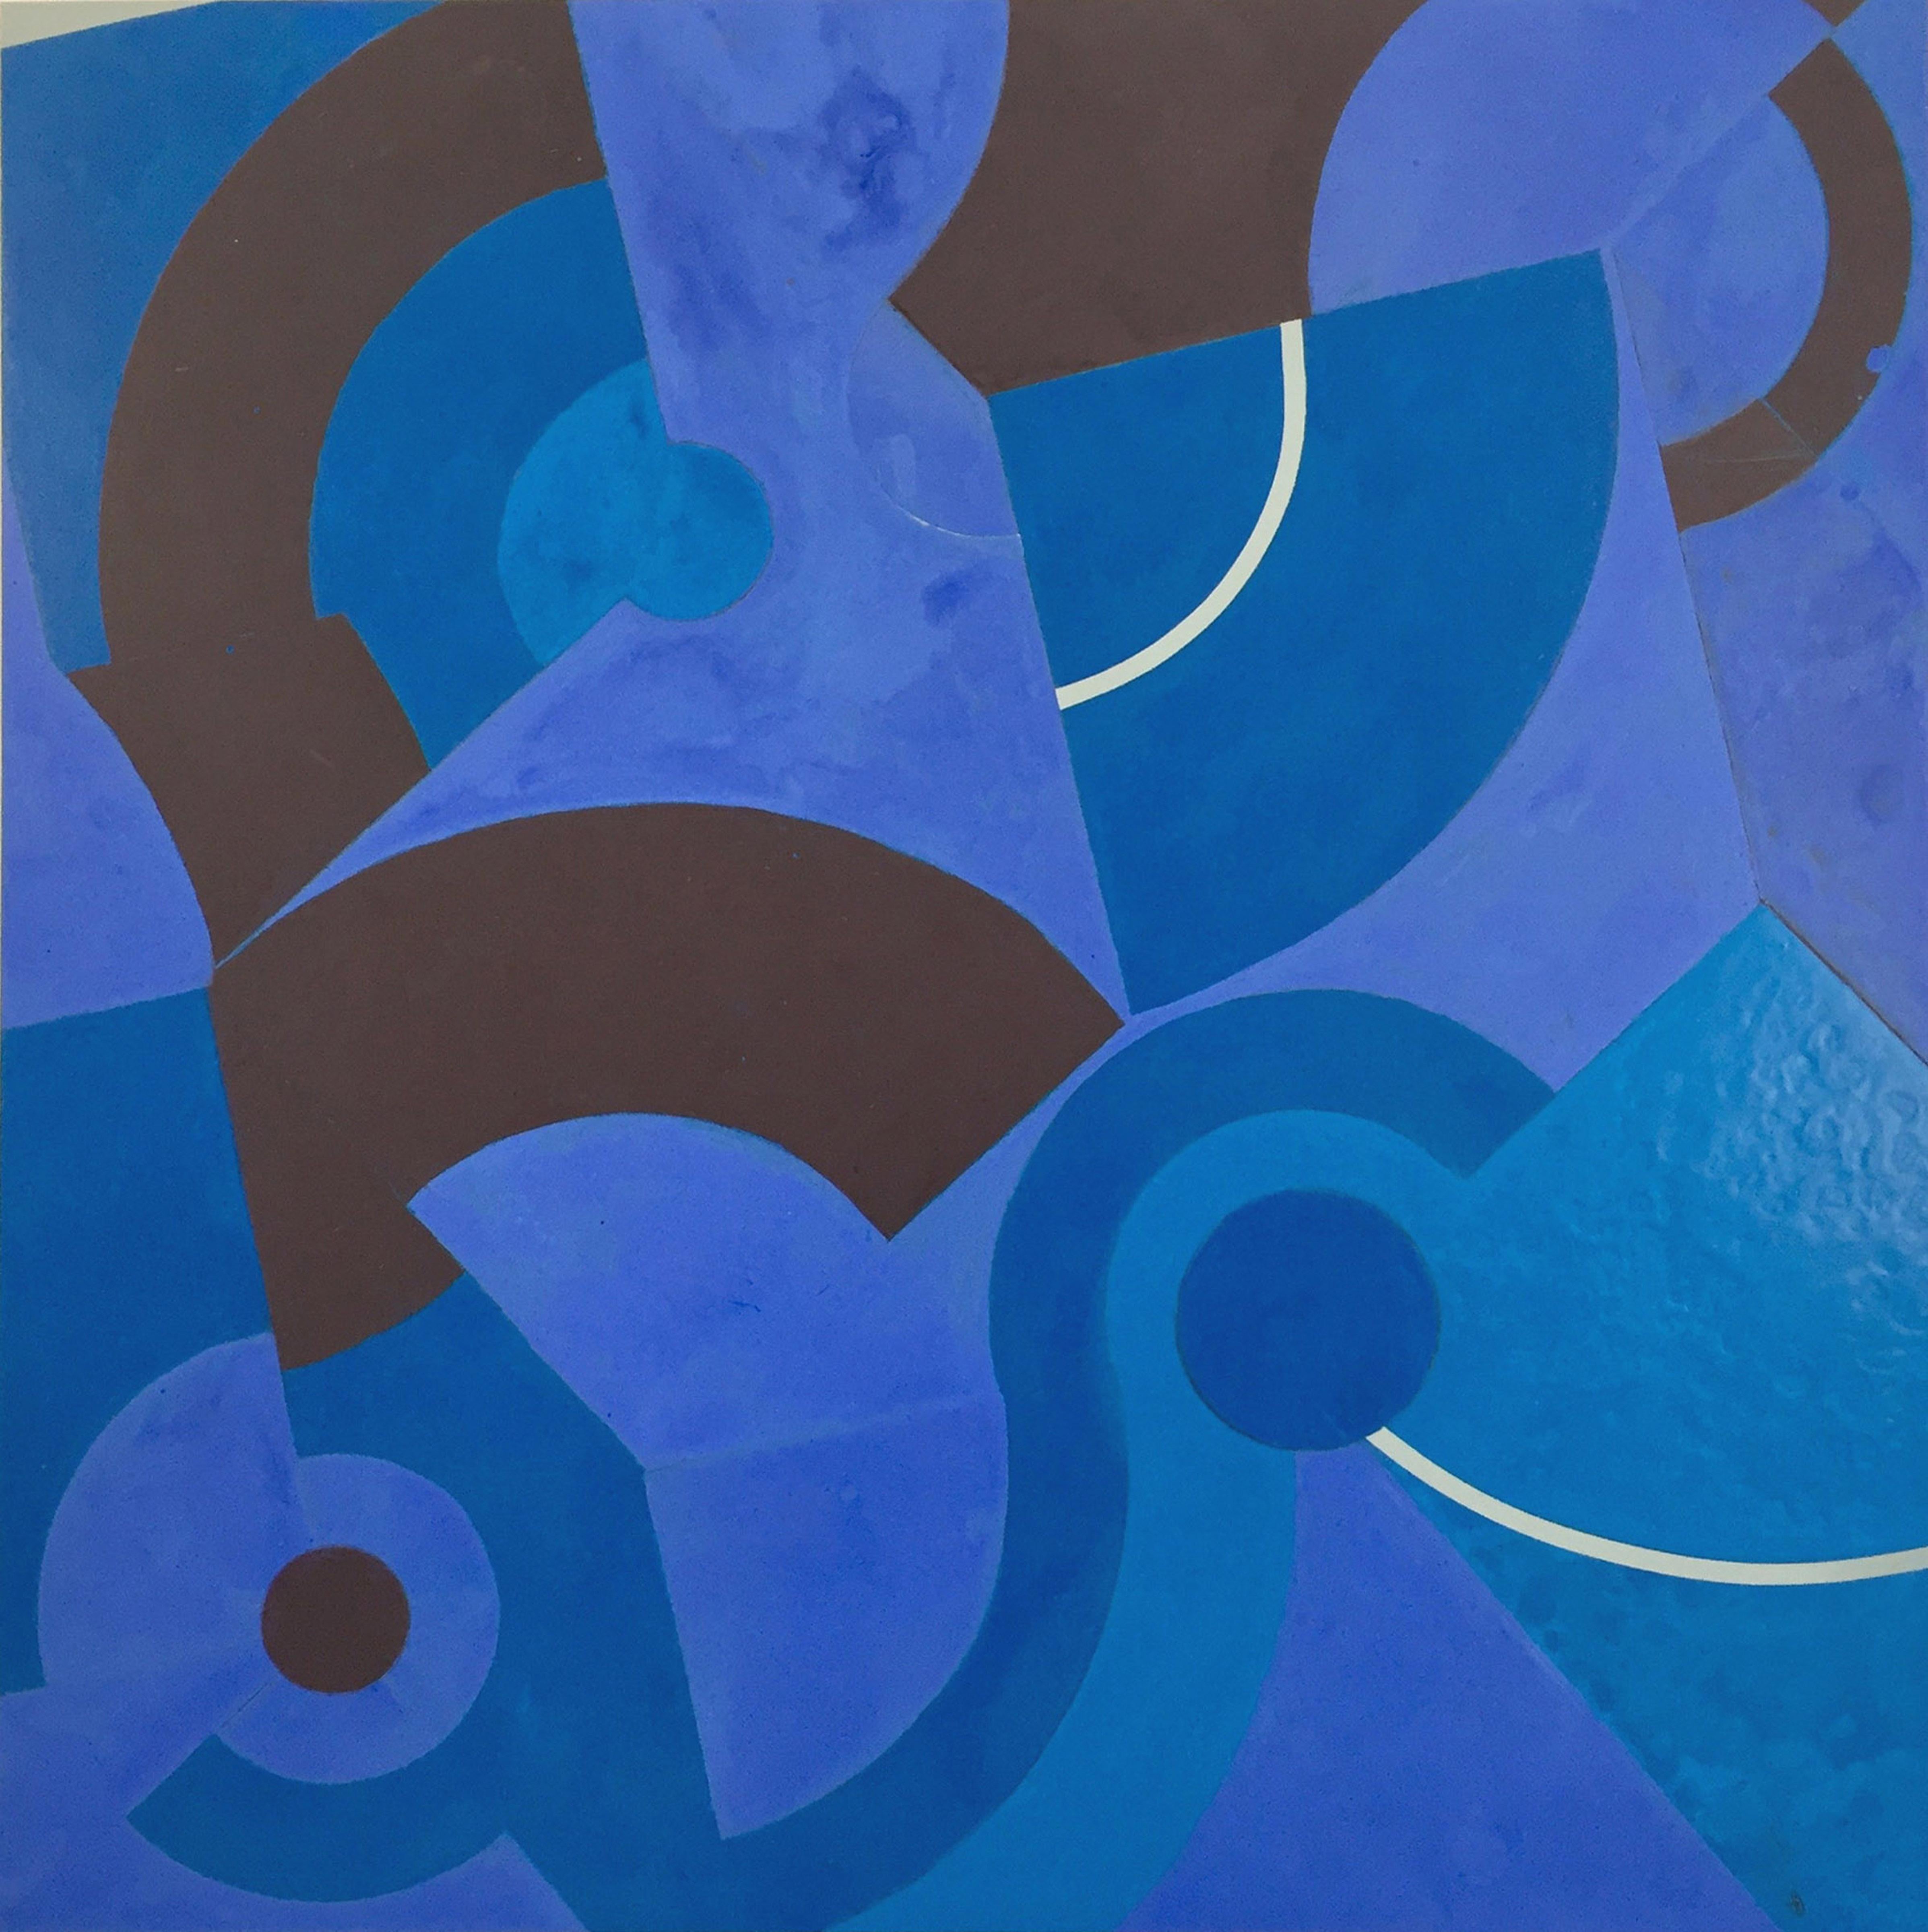 Abstract Painting Jeanette Fintz - Divining Blue #2 (peinture abstraite géométrique en bleu et noir)